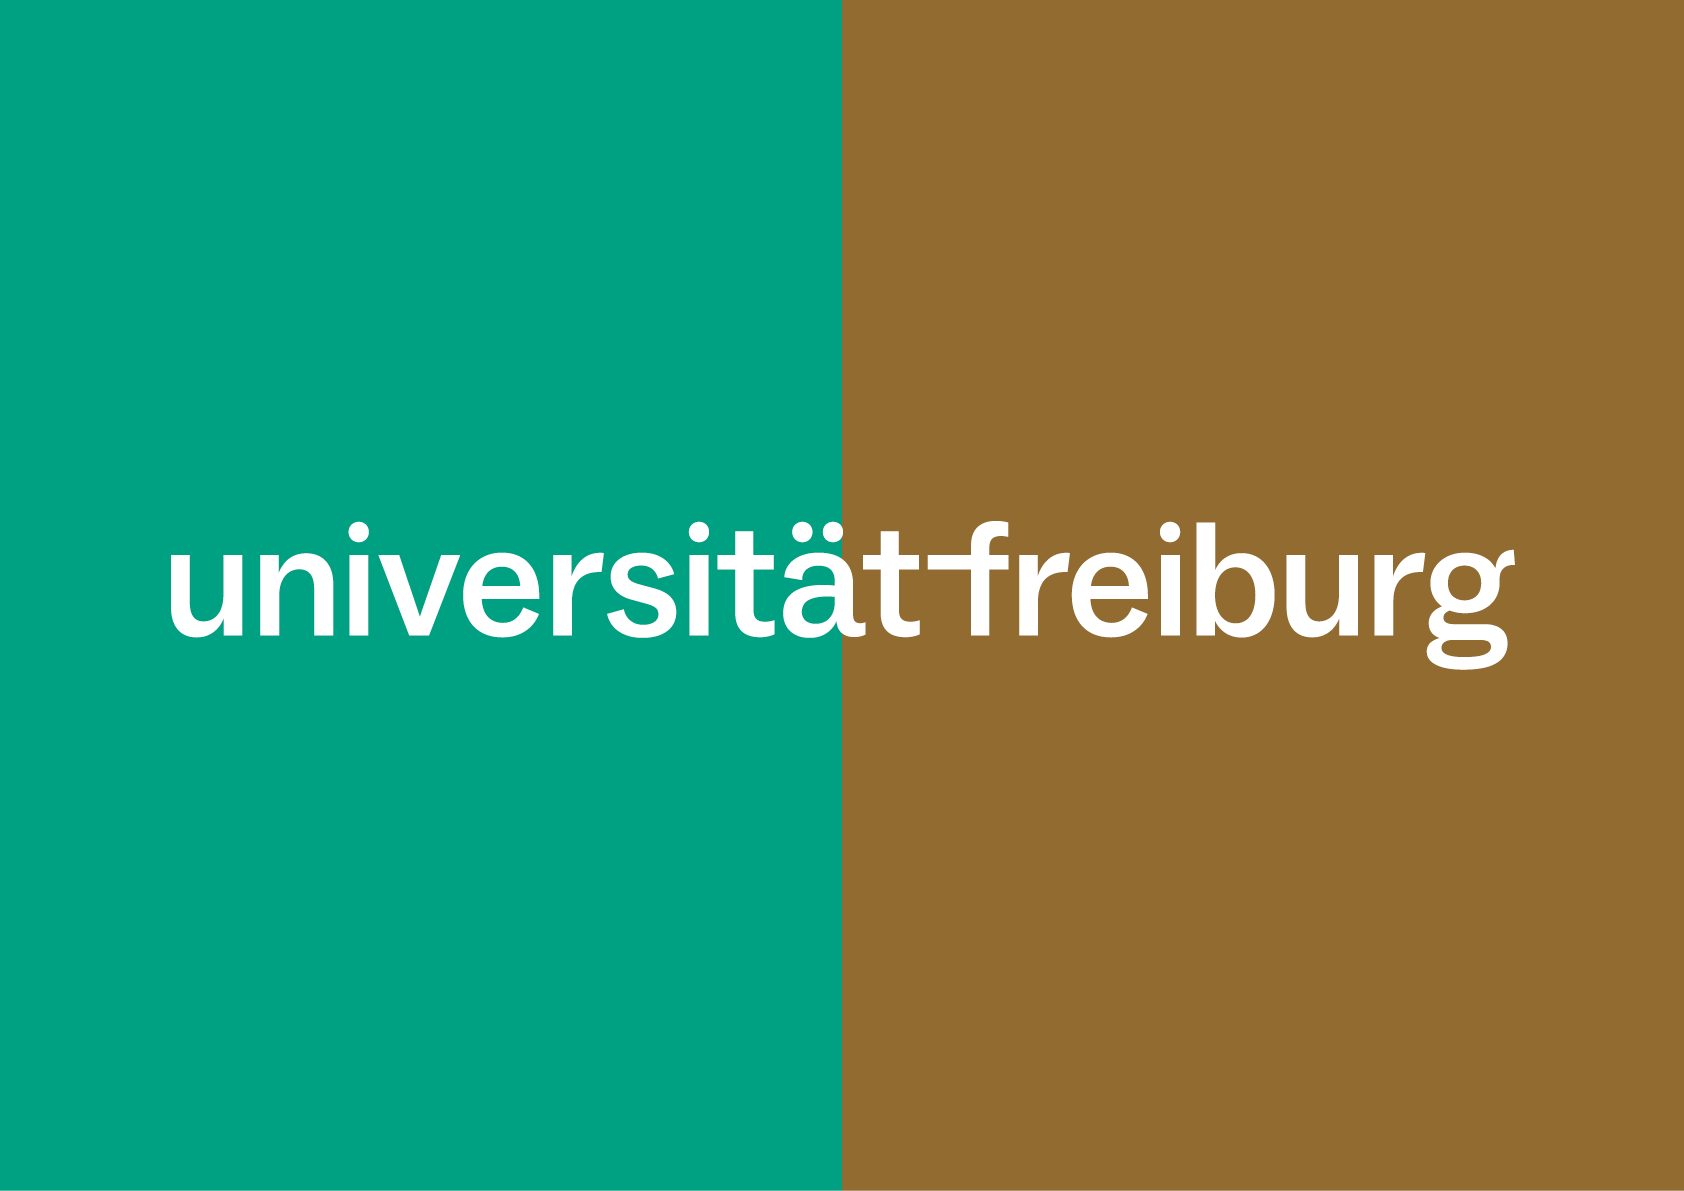 Weiße Wortmarke der Universität auf dunklen Zusatzfarben (grün und braun)